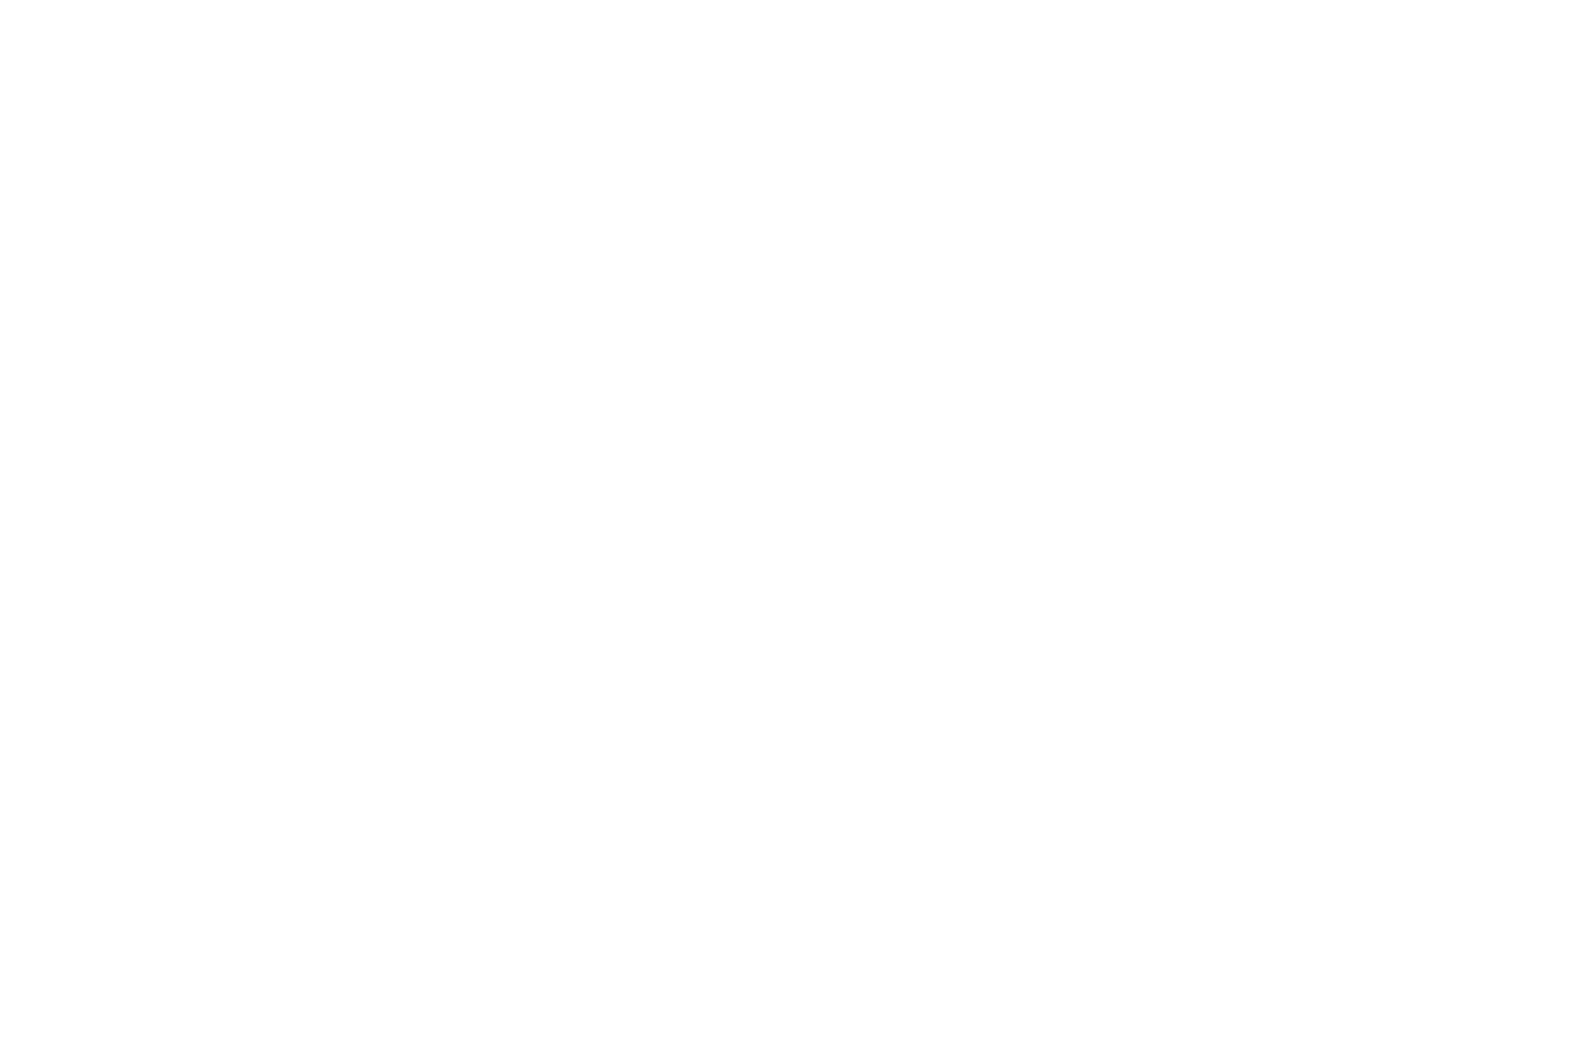 Grupa Kety Logo groß für dunkle Hintergründe (transparentes PNG)